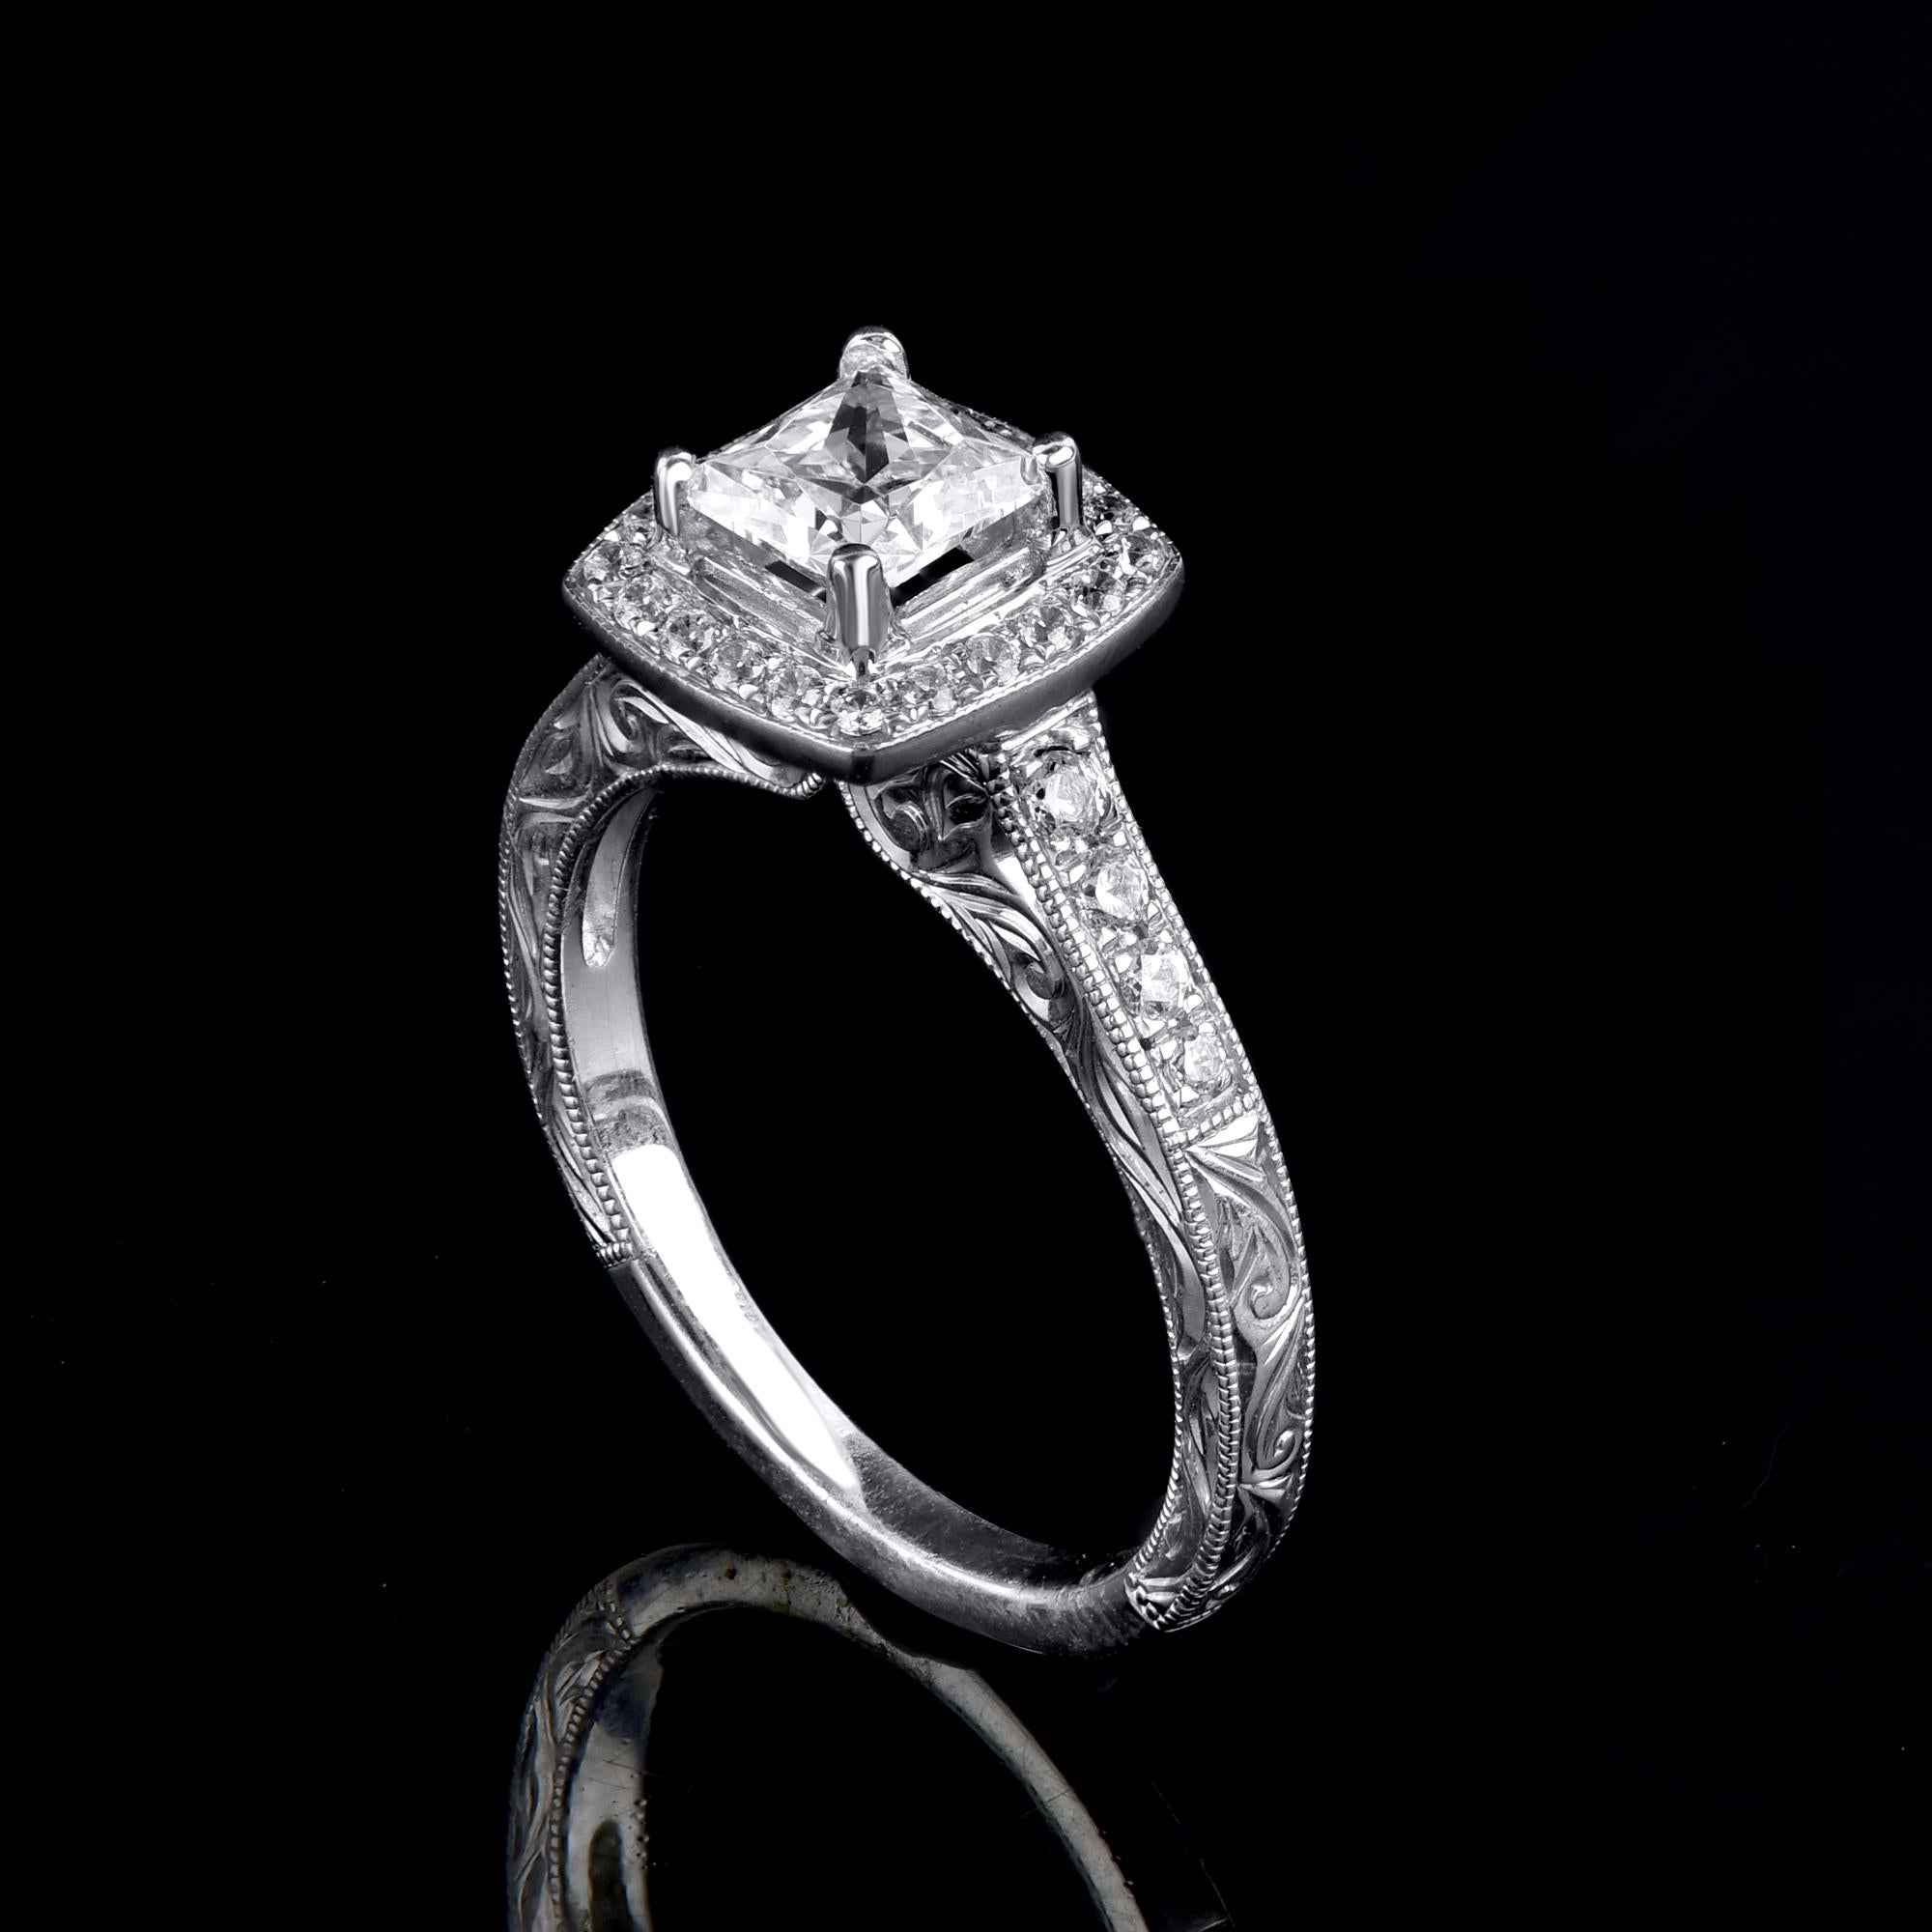 Lassen Sie die zeitlose Eleganz dieses Diamant-Verlobungsrings für sich sprechen. Dieser Ring ist fachmännisch aus 14 Karat Weißgold gefertigt und verfügt über einen 0,80-karätigen Mittelstein und 0,30-karätige Diamanten, die in Zackenfassung